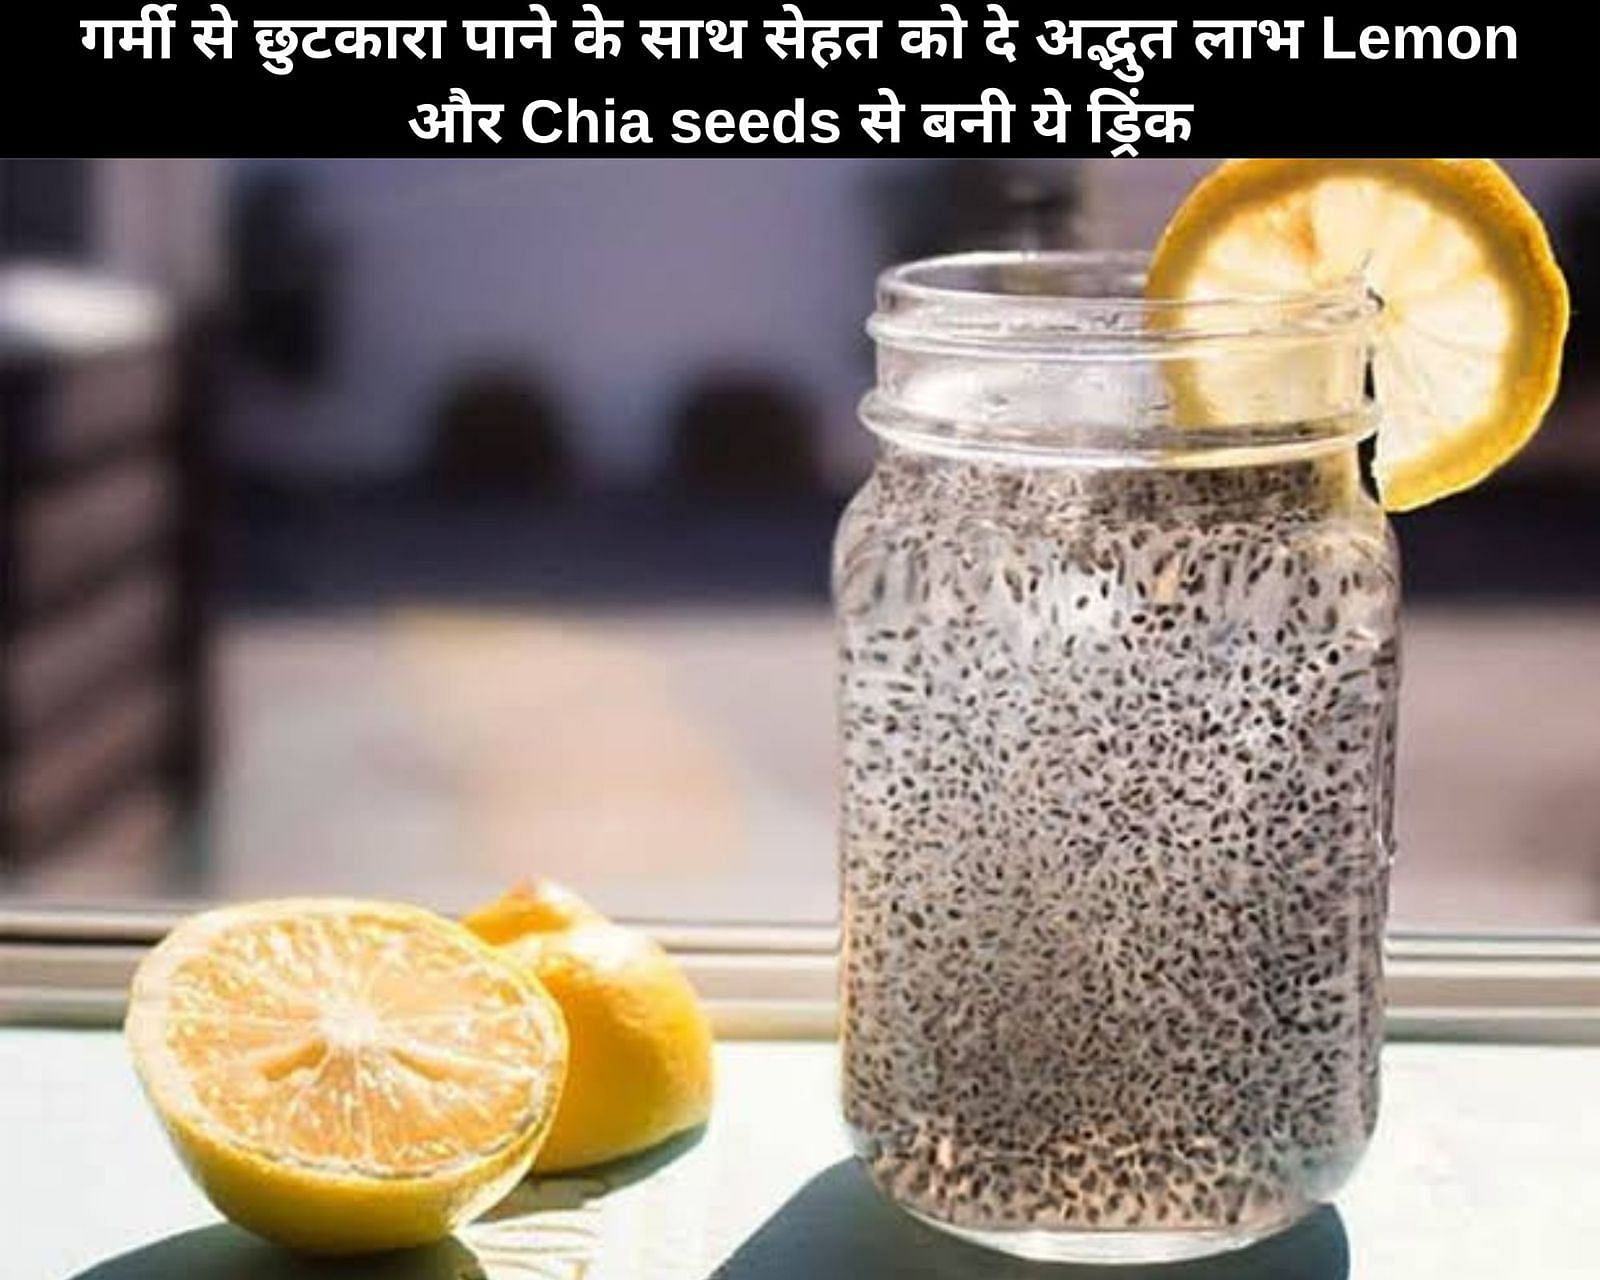 गर्मी से छुटकारा पाने के साथ सेहत को दे अद्भुत लाभ Lemon और Chia seeds से बनी ये ड्रिंक 